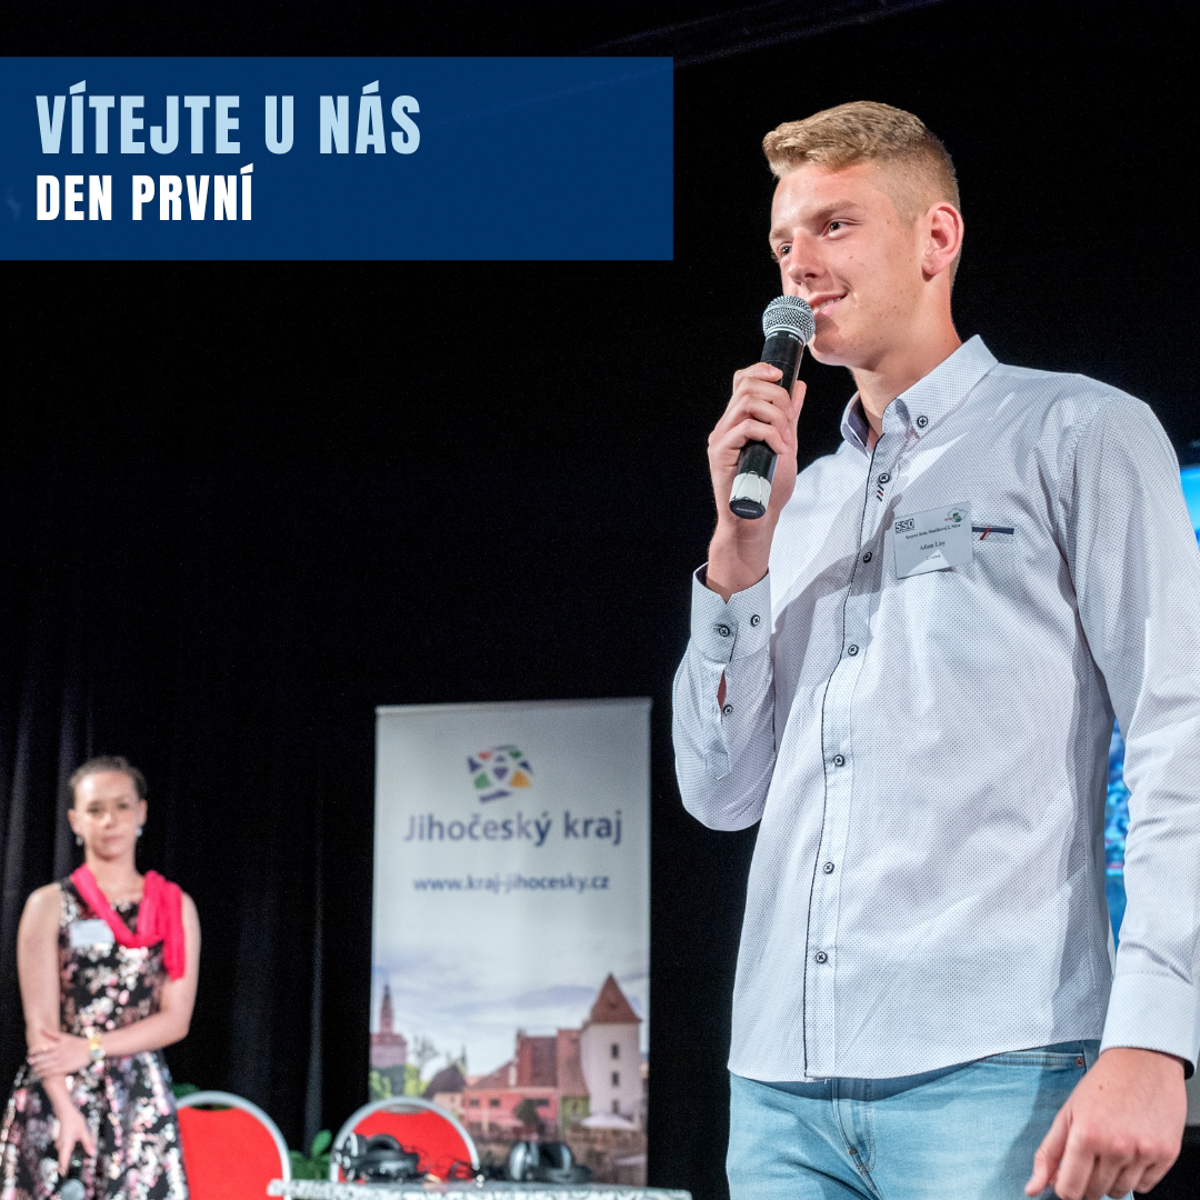 Originálne prezentácie Slovenska priniesli študentom z Nitry rovno dve prvenstvá